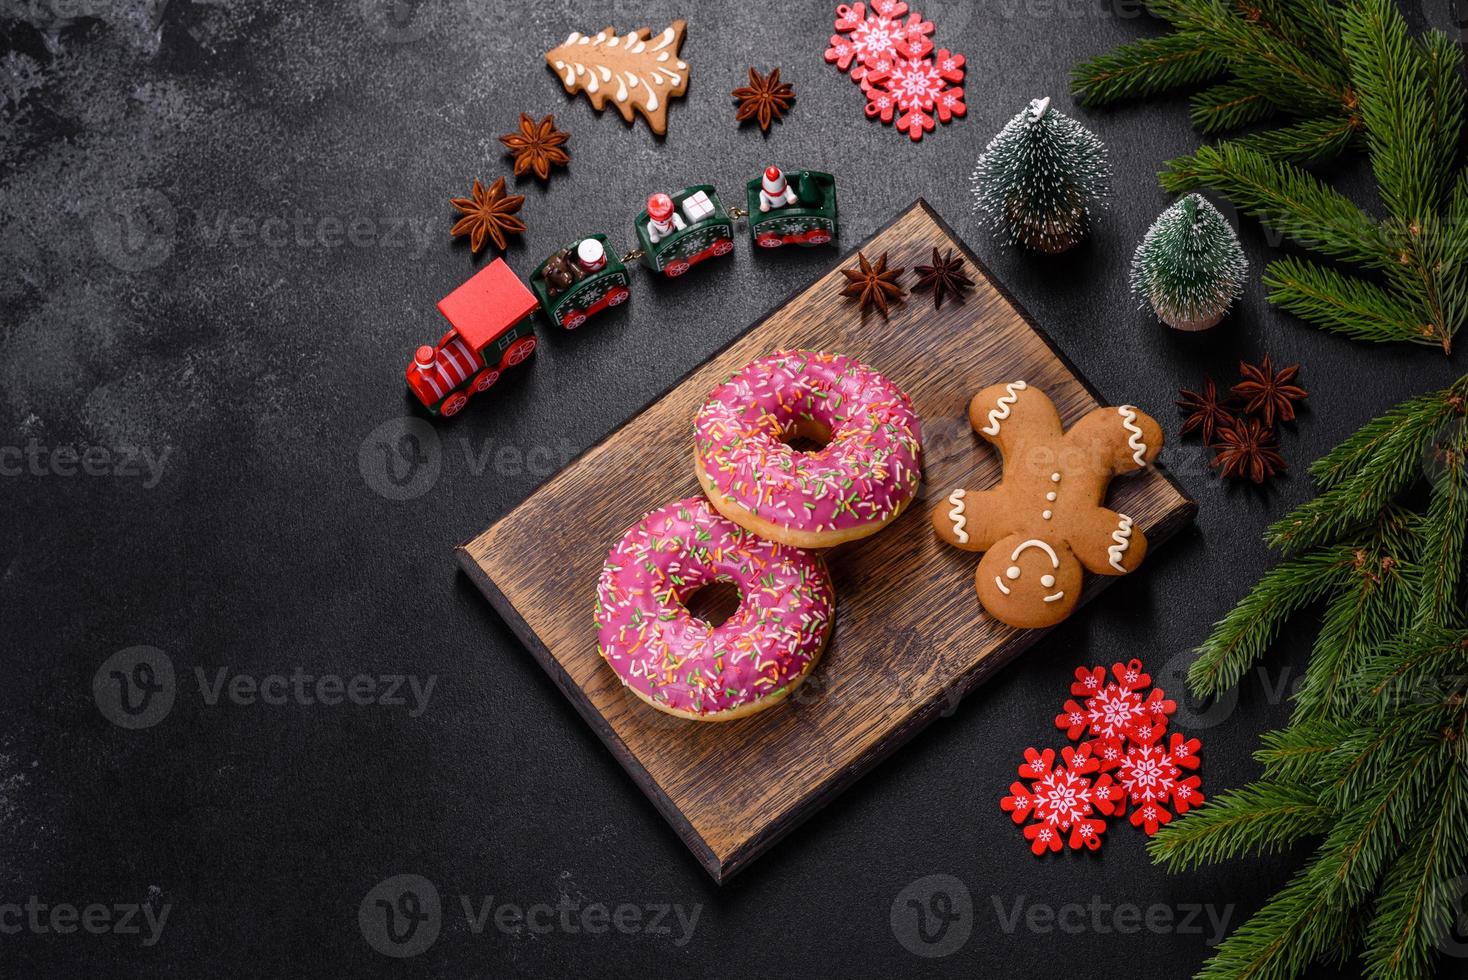 un hermoso donut con glaseado rosa y espolvoreado de colores en una mesa navideña foto